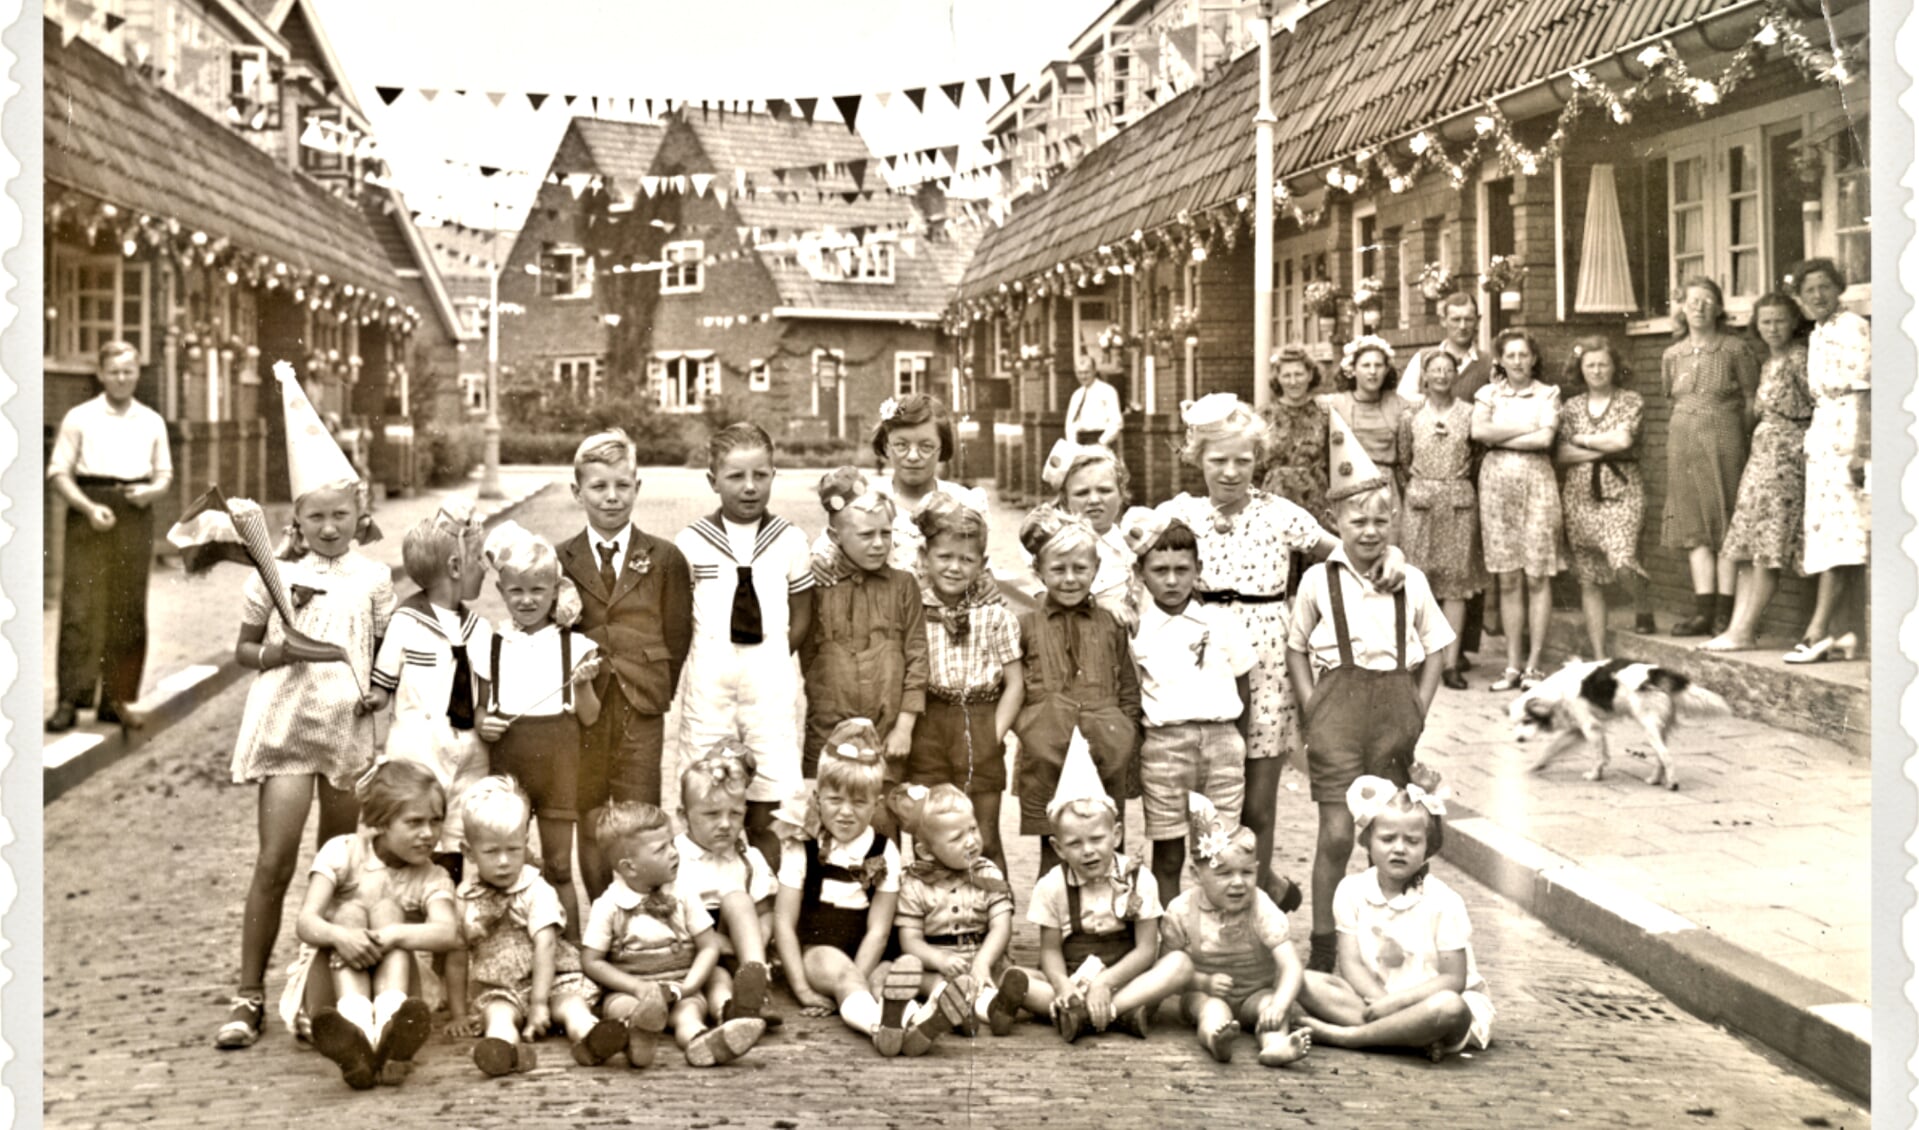 Bevrijdingsfeest juni 1945 in de Oosthuizenstraat.